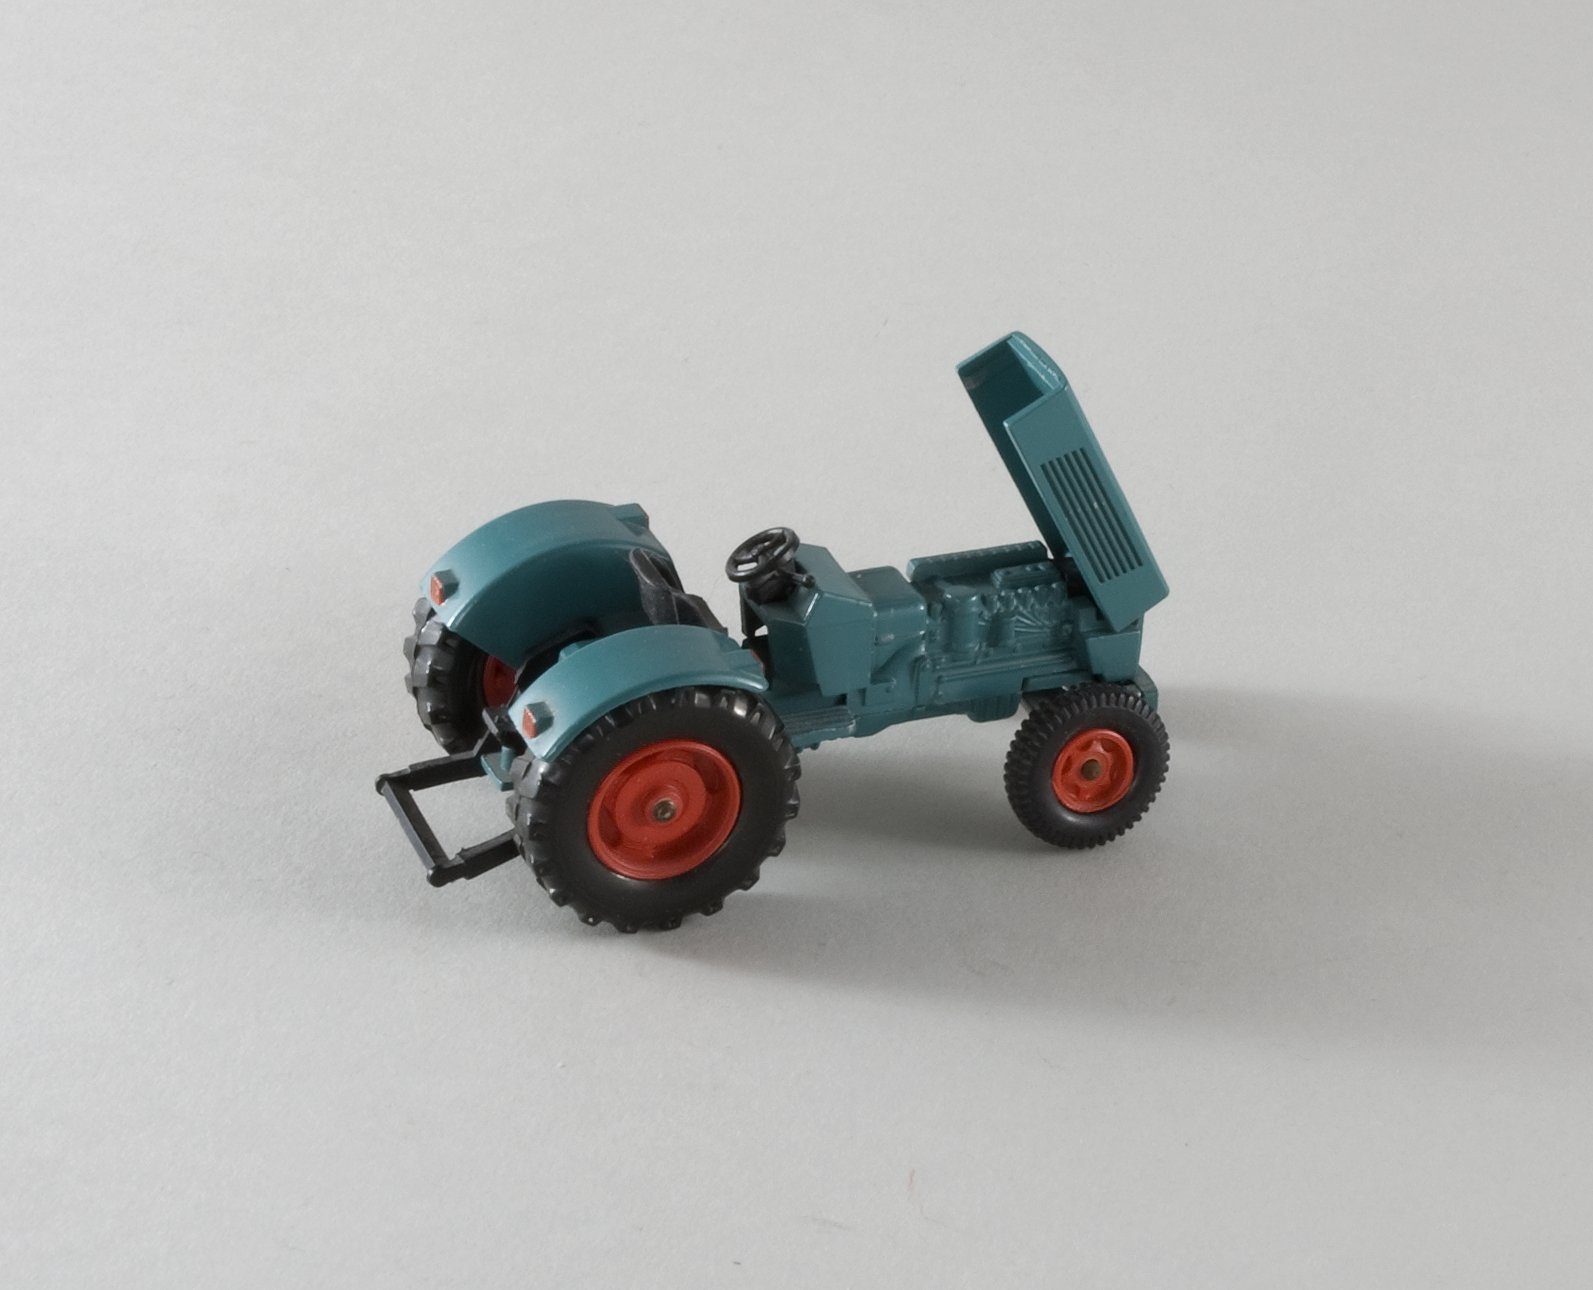 Spielzeugmodell: "Hanomag" - Traktor R 900 (Stiftung Domäne Dahlem - Landgut und Museum, Weiternutzung nur mit Genehmigung des Museums CC BY-NC-SA)